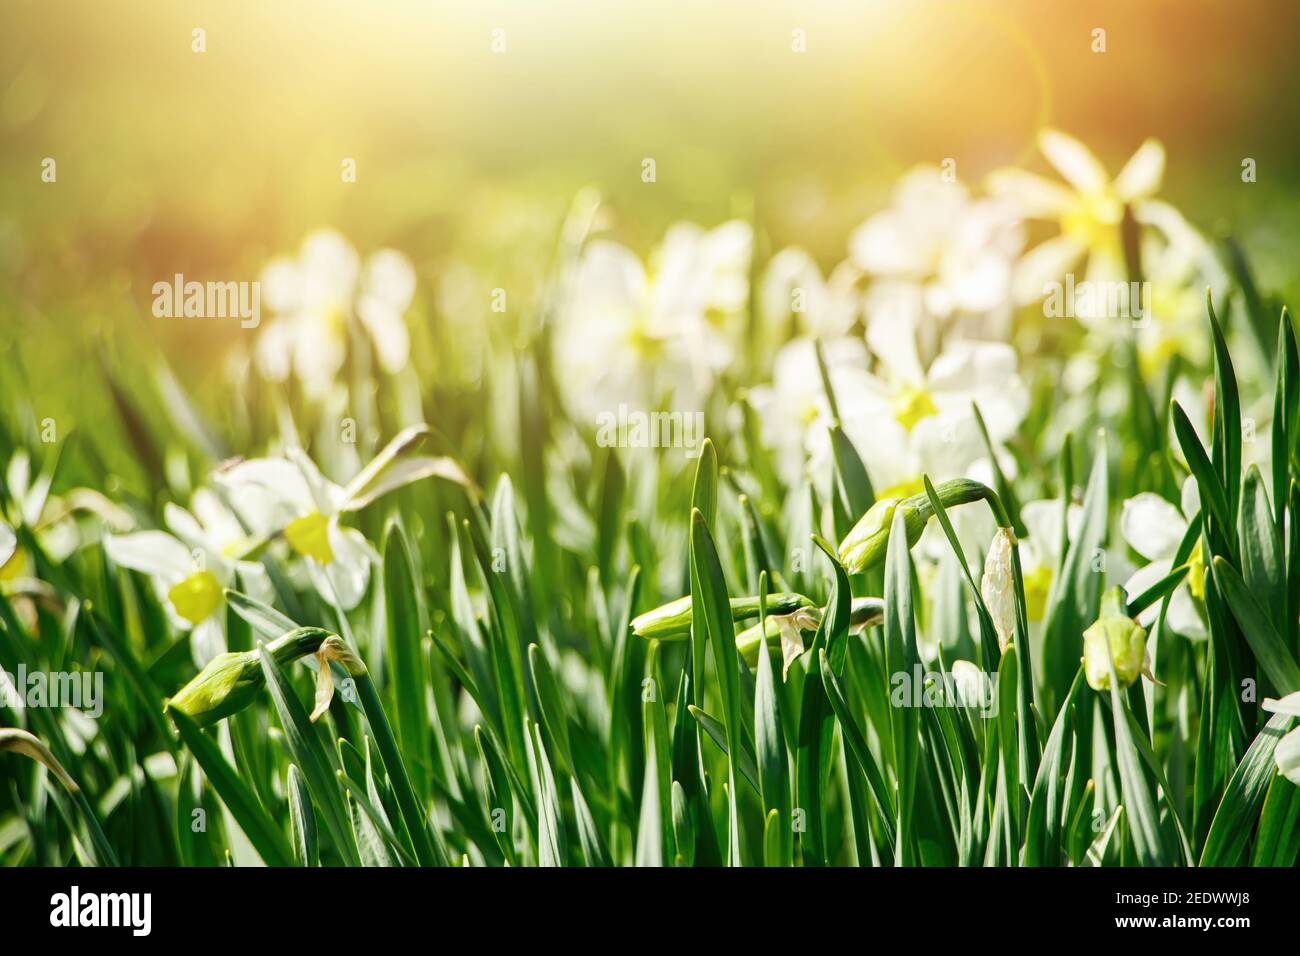 Junge weiße Narzissen im Garten. Frühling blüht in der Sonne. Abstrakter natürlicher Hintergrund. Frohe Ostern. Stockfoto